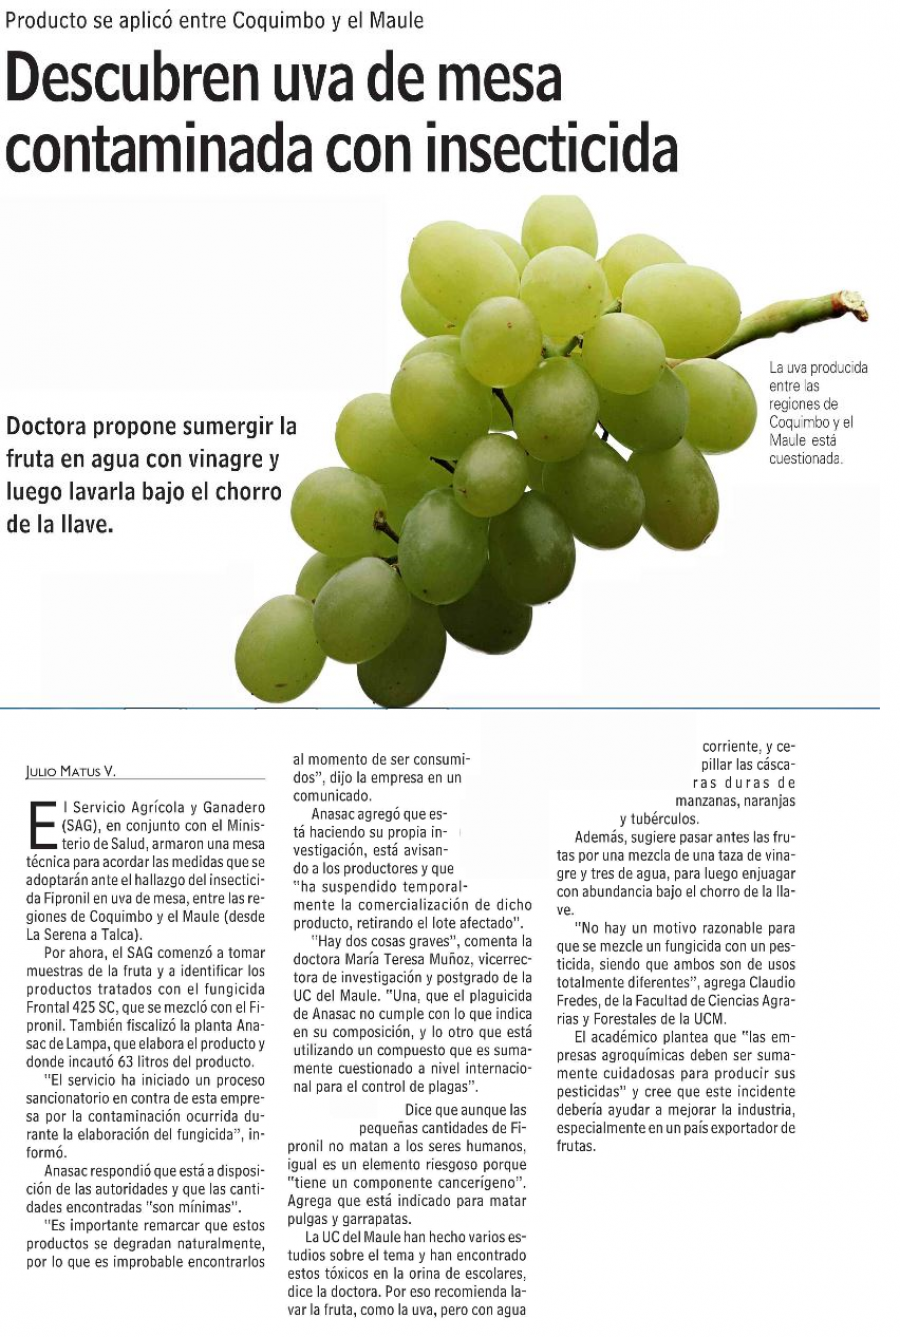 25 de abril en Diario Las Últimas Noticias: “Descubren uva de mesa contaminada con insecticida”